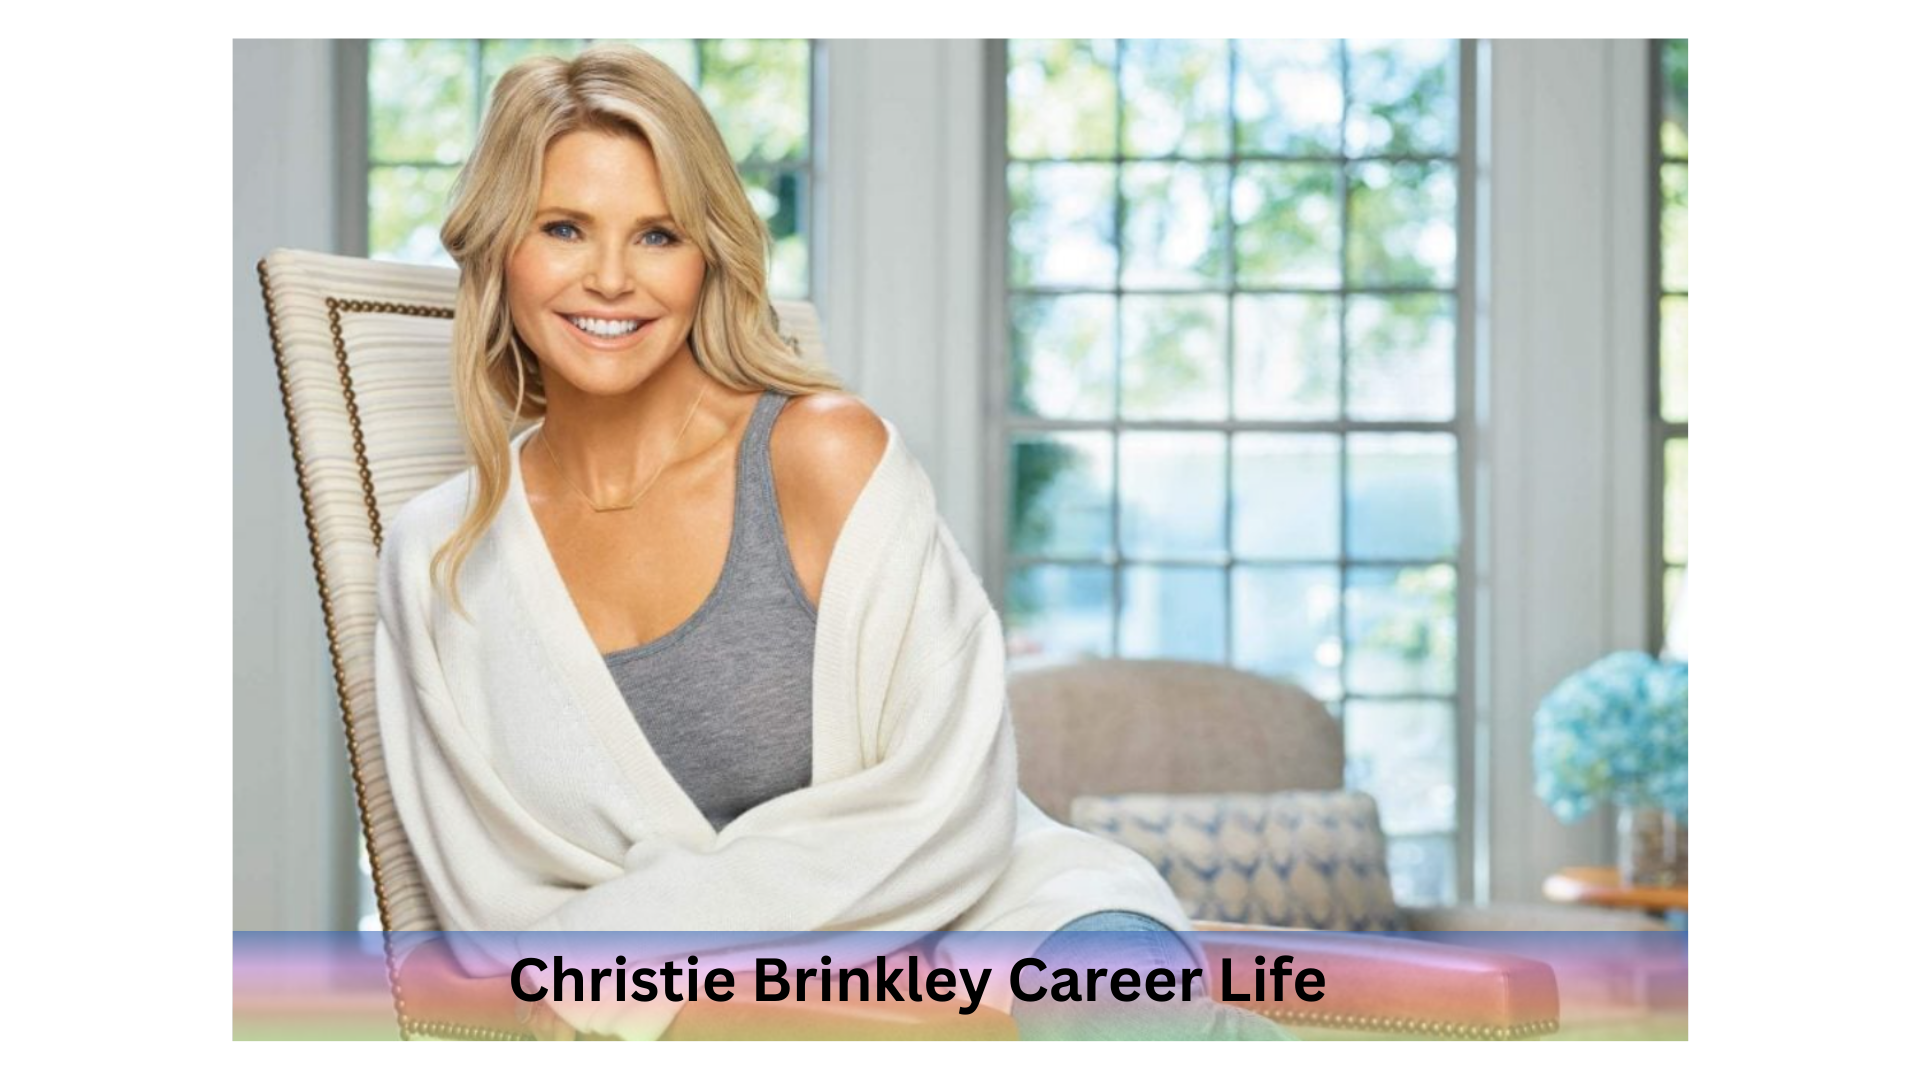 Christie Brinkley Career Life